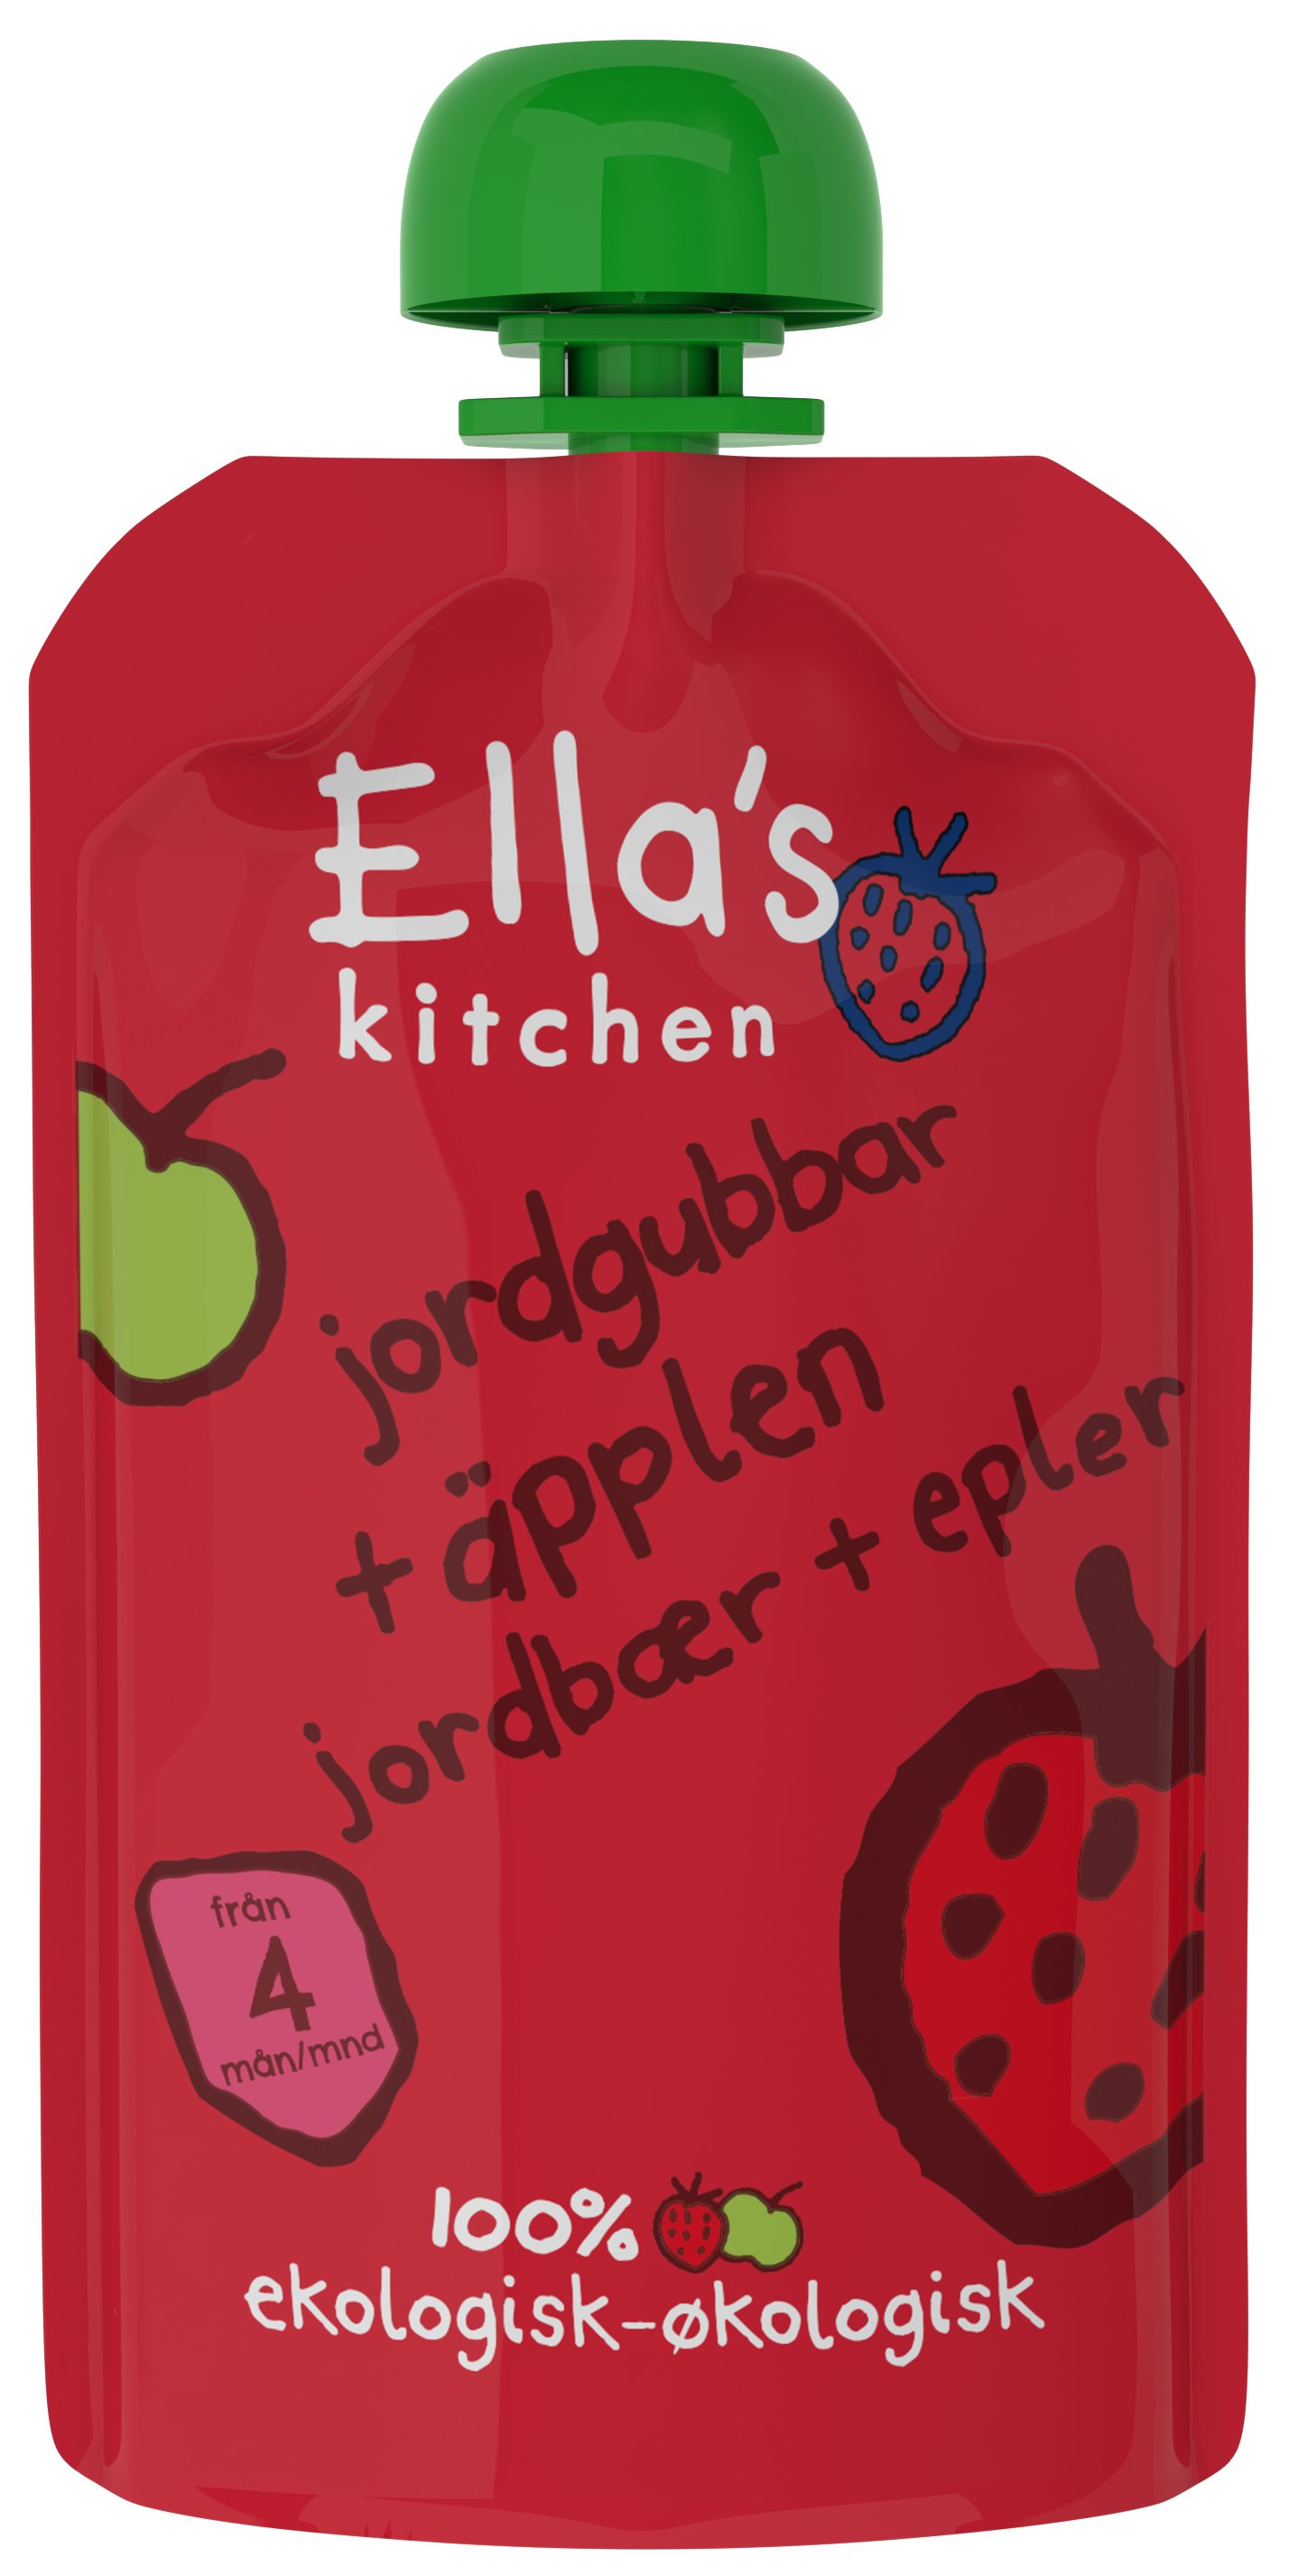 Ella's Kitchen Jordgubb & Äpple Puré 120 g